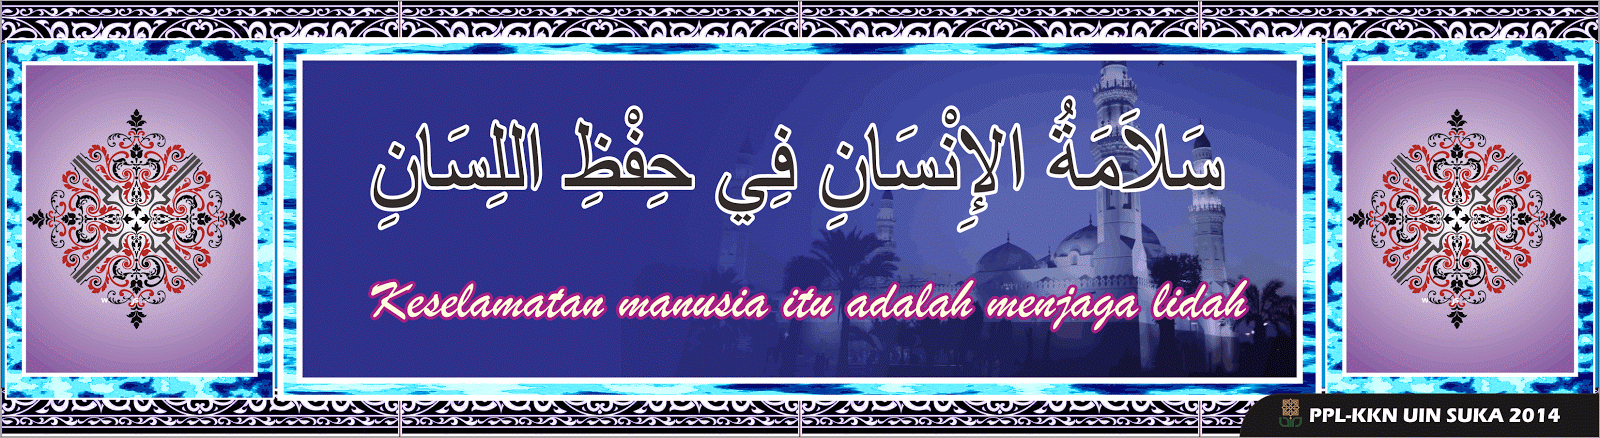 Contoh beberapa desain banner kata mutiara arab - By Soni 